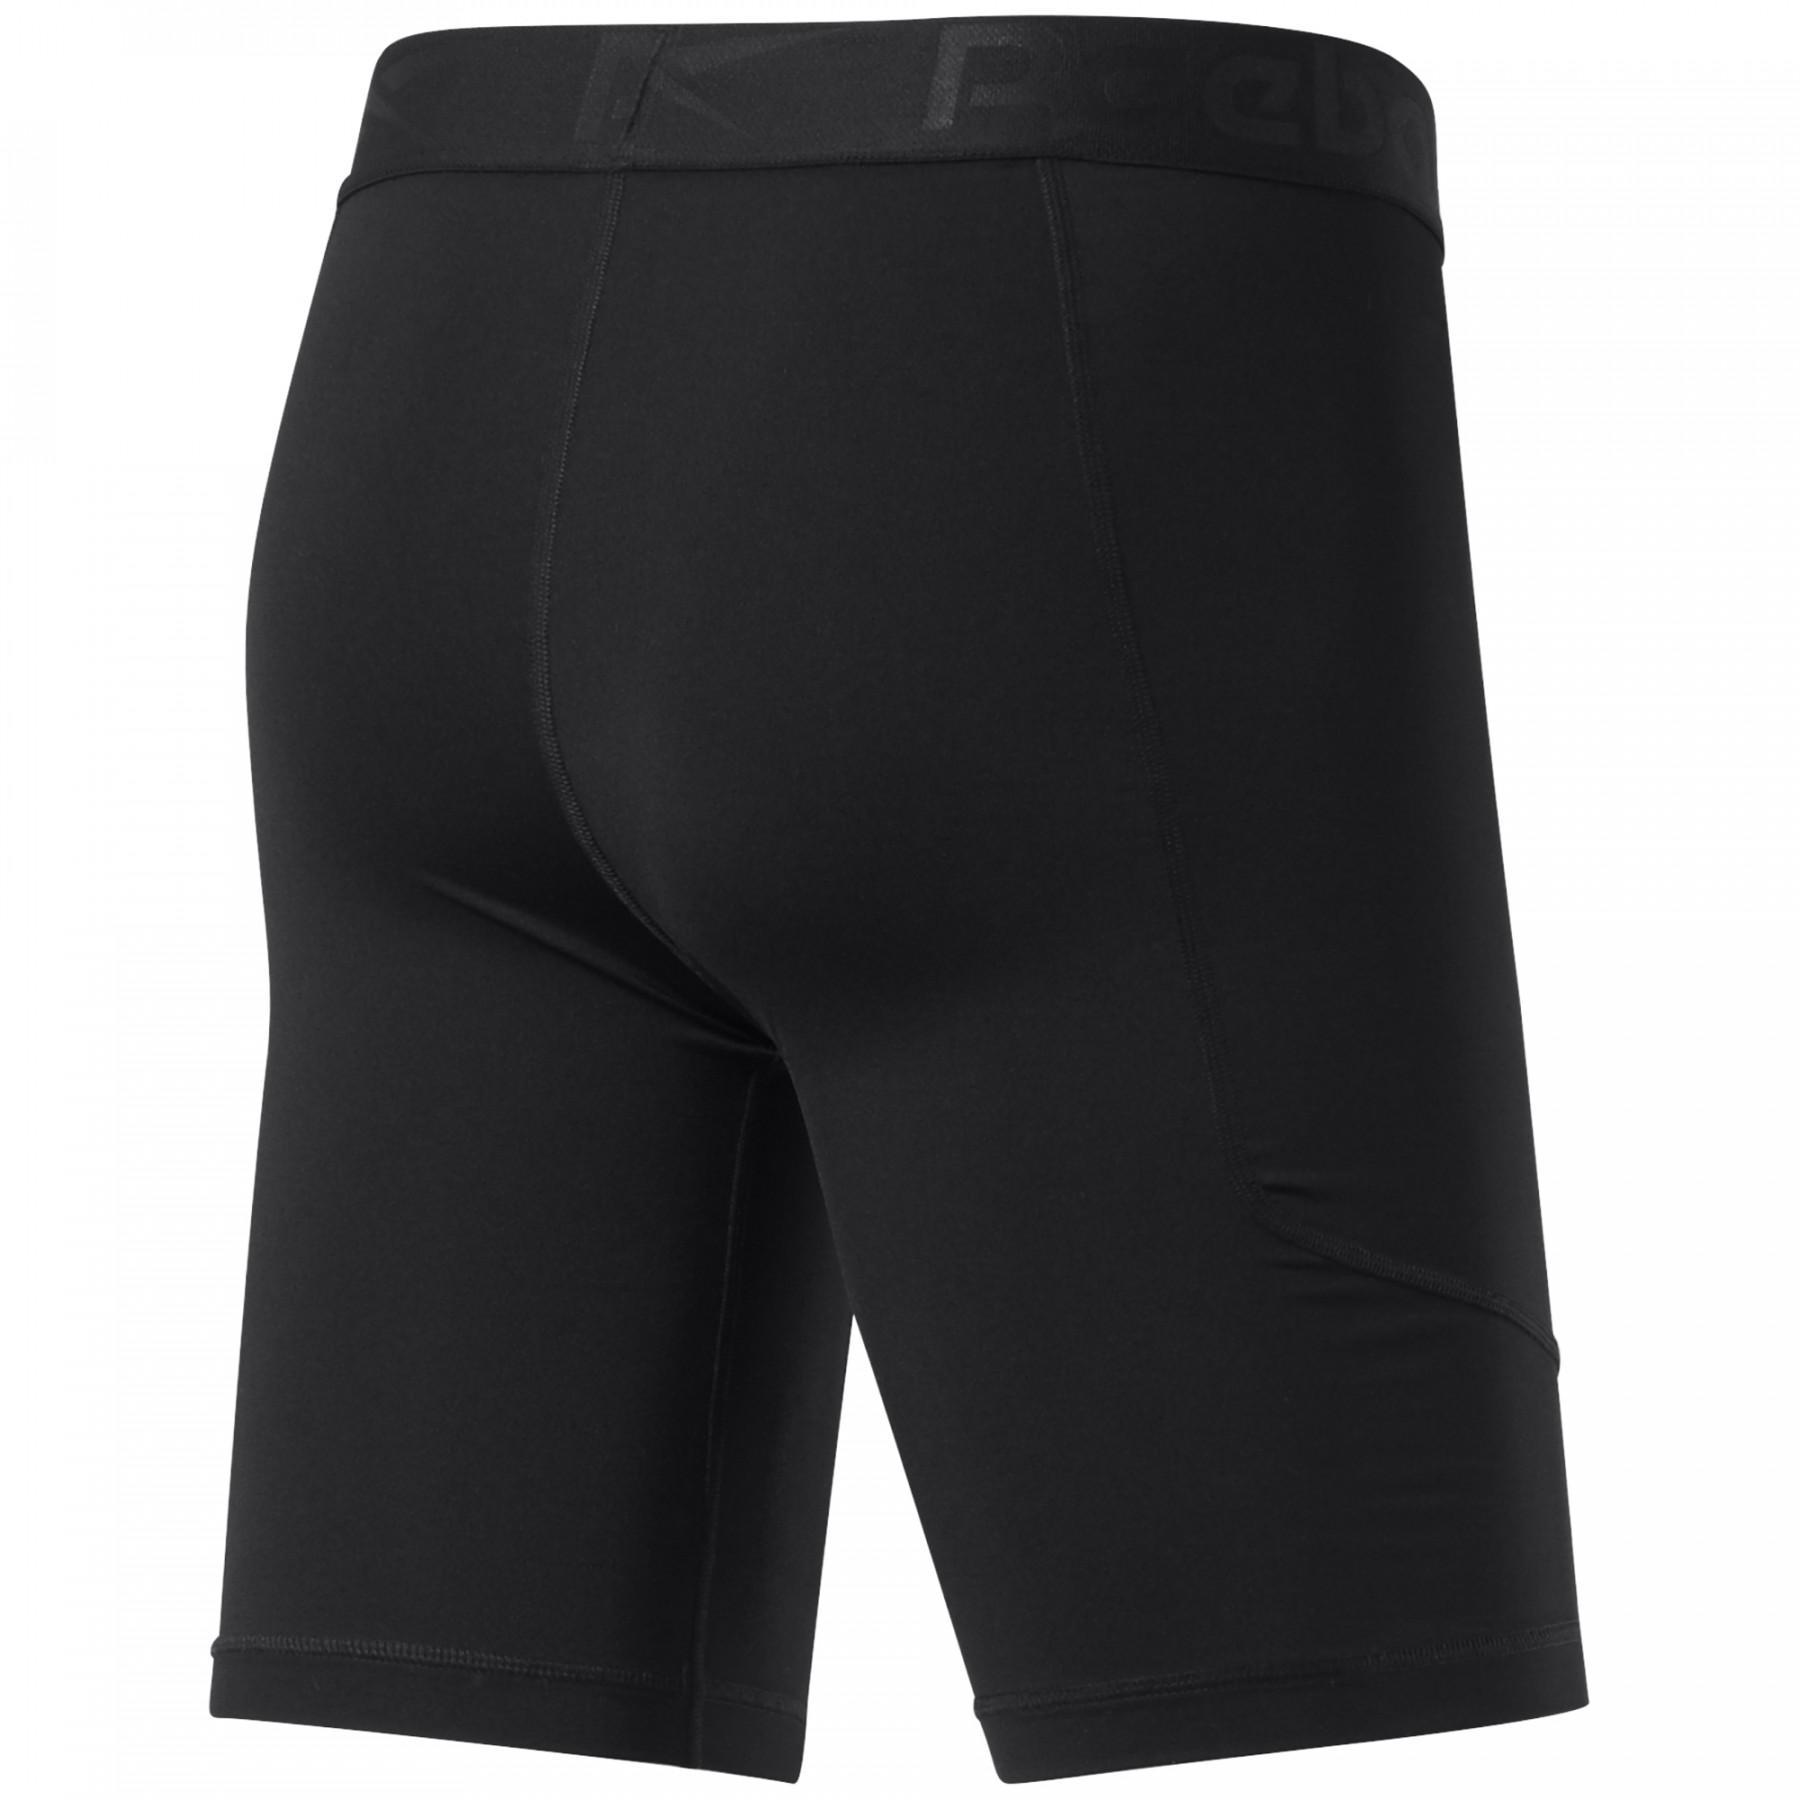 Pantalones cortos de compresión Reebok Workout Ready